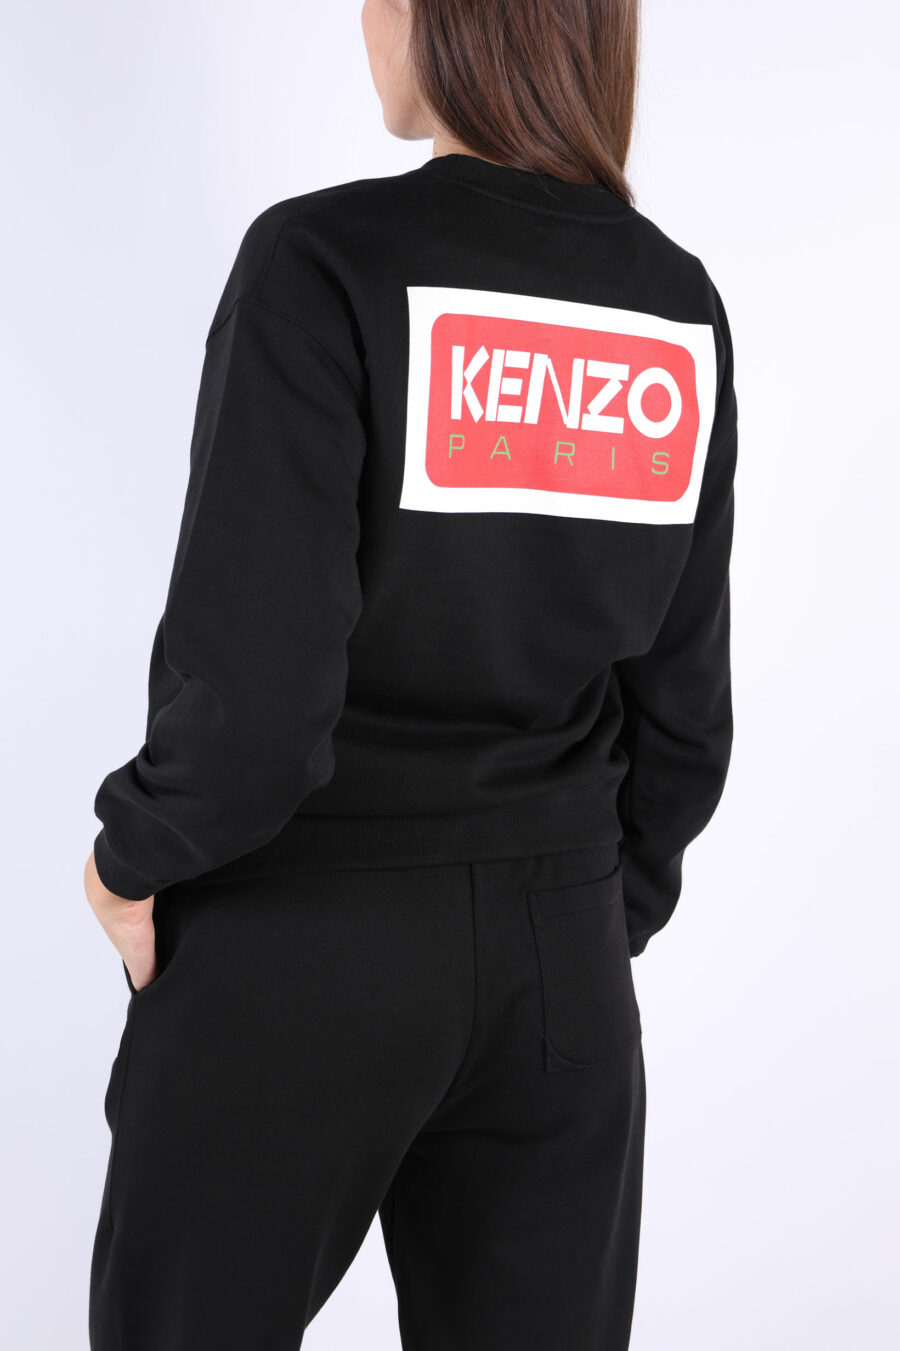 Sweatshirt preta com maxilogo nas costas "kenzo paris" - 3612230515628 2